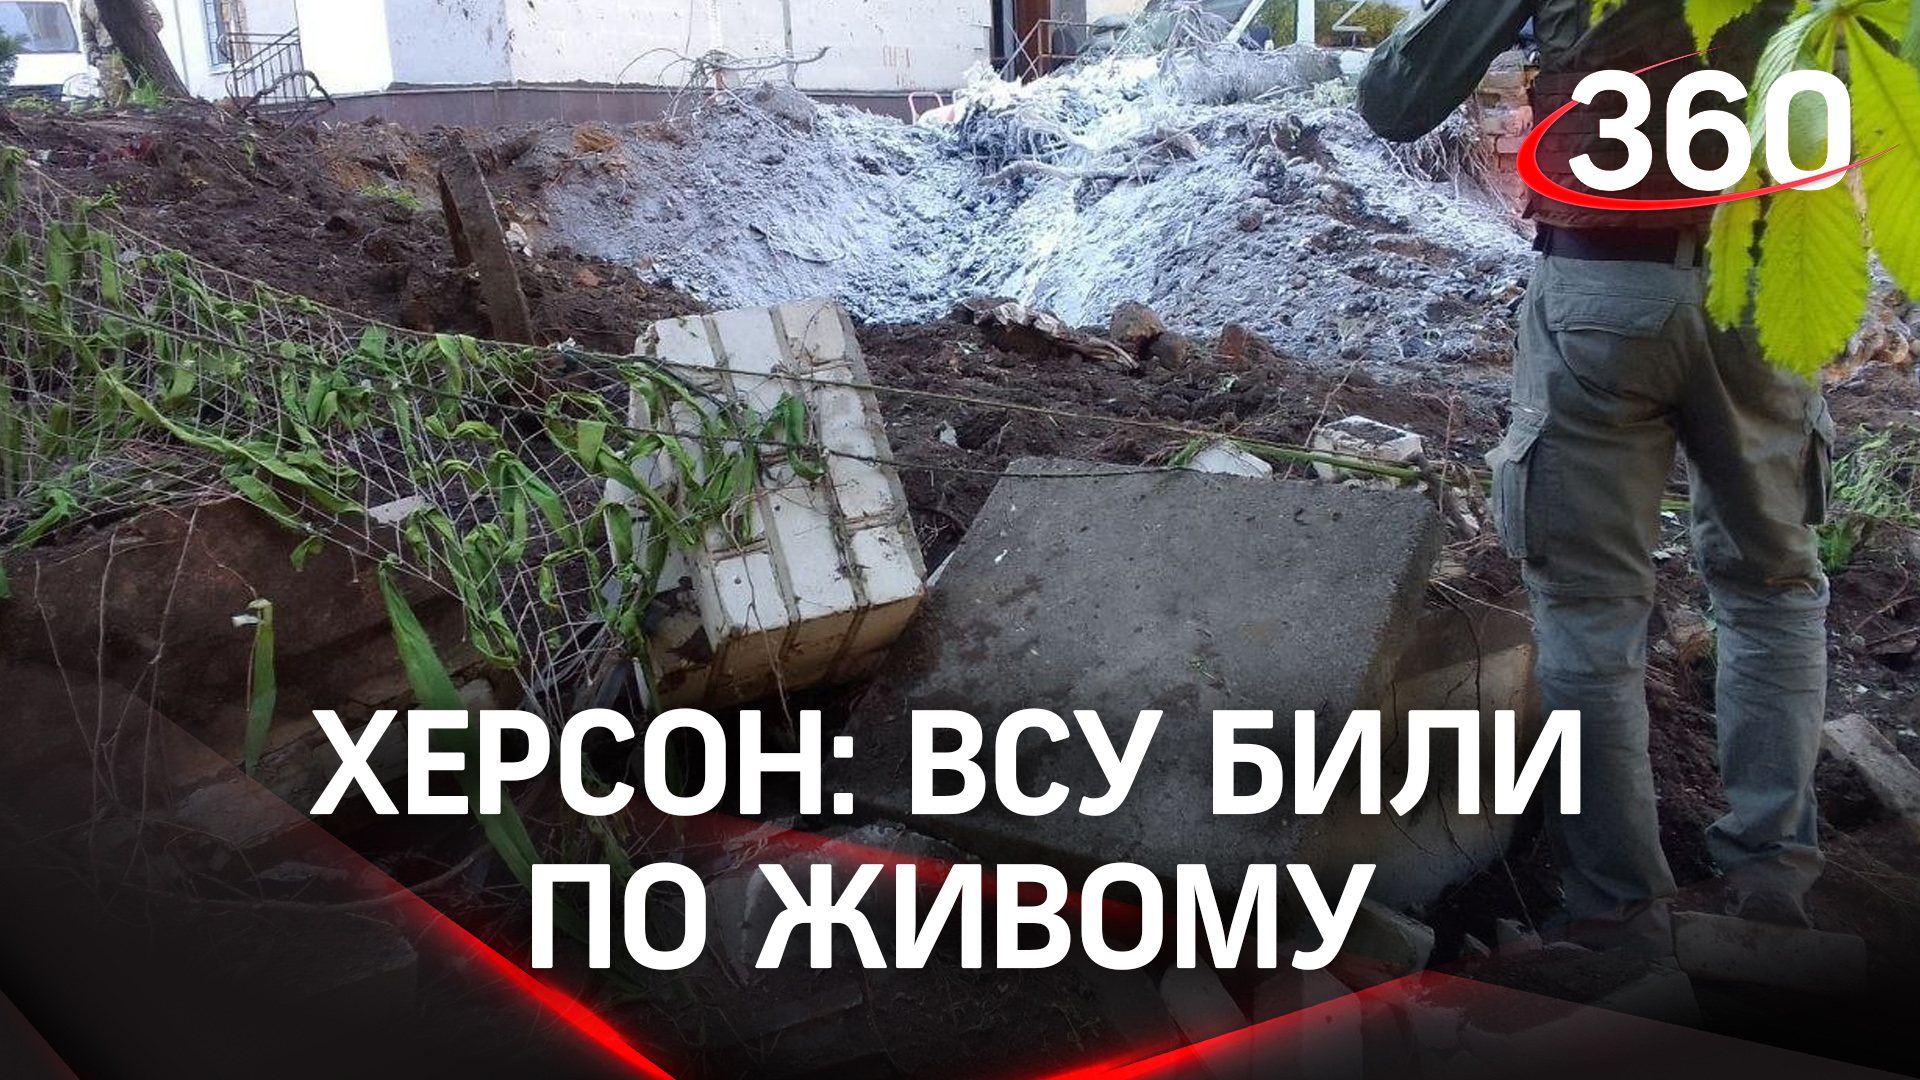 Ракетный удар ВСУ по Херсону - кадры последствий украинской атаки по мирным жителям от Минобороны